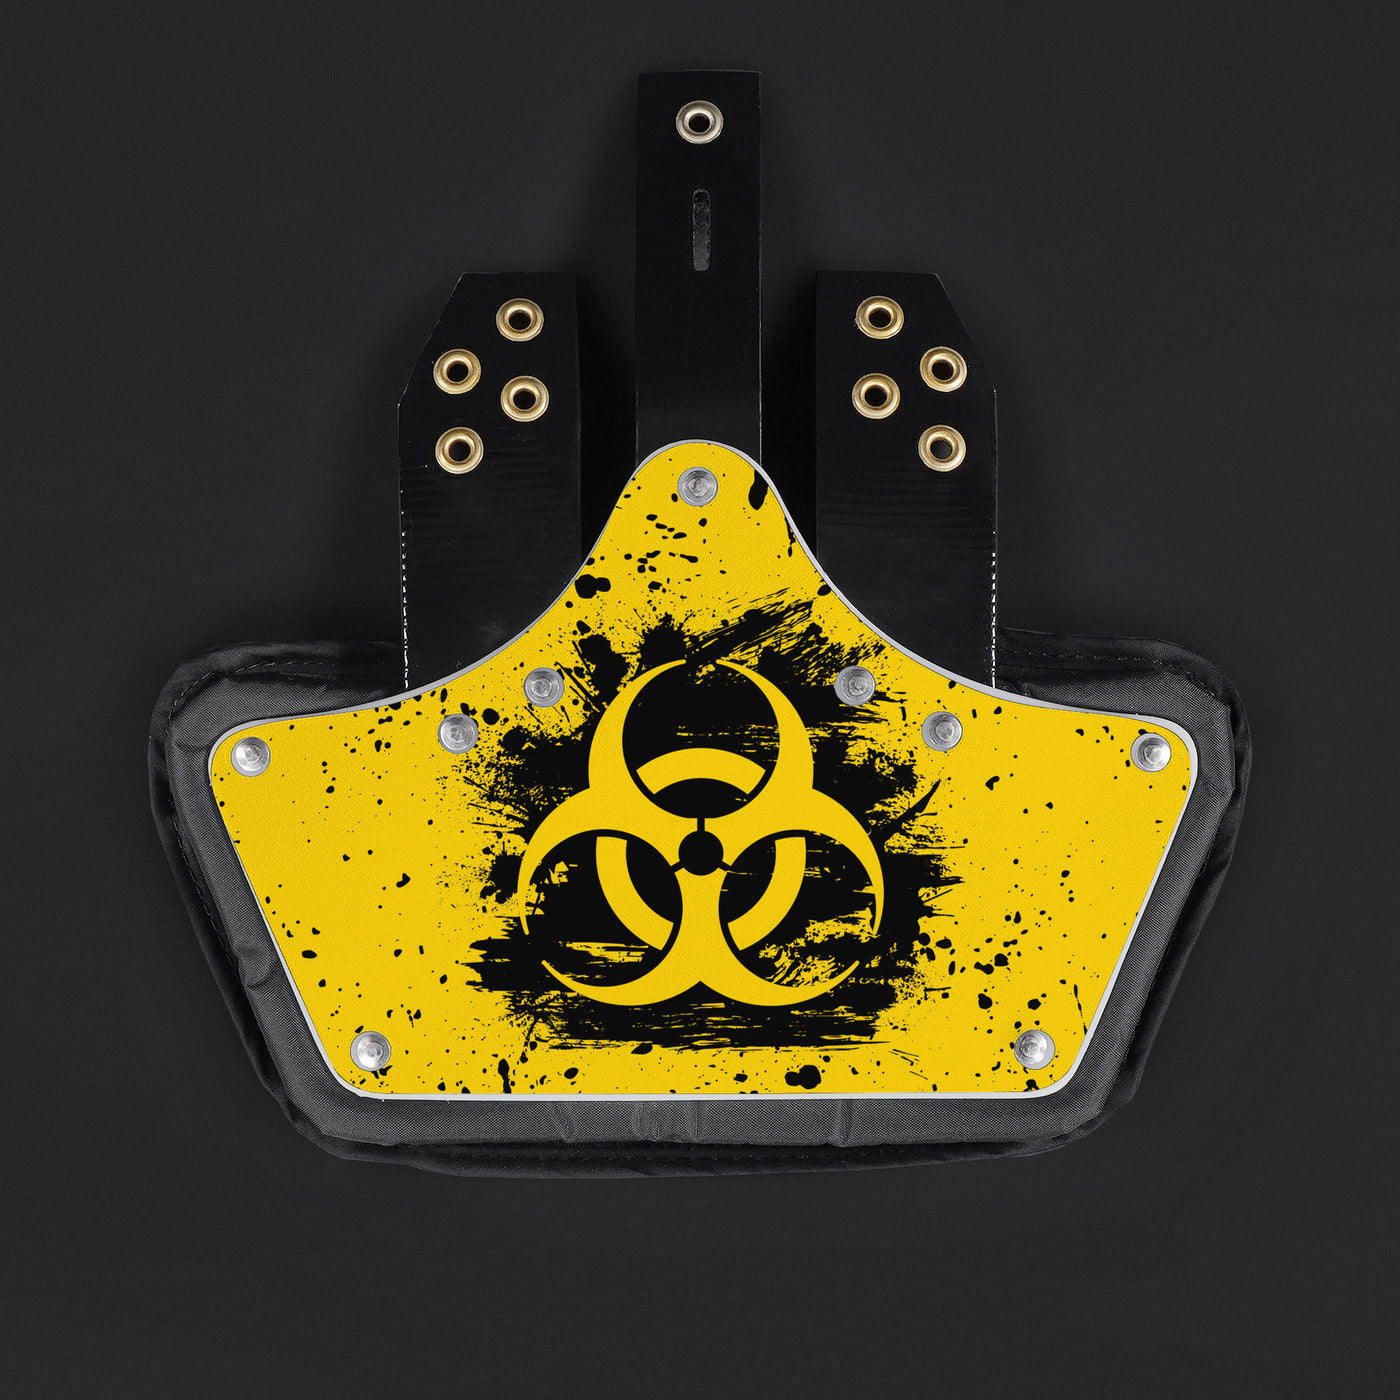 Biohazard Grunge Sticker for Back Plate